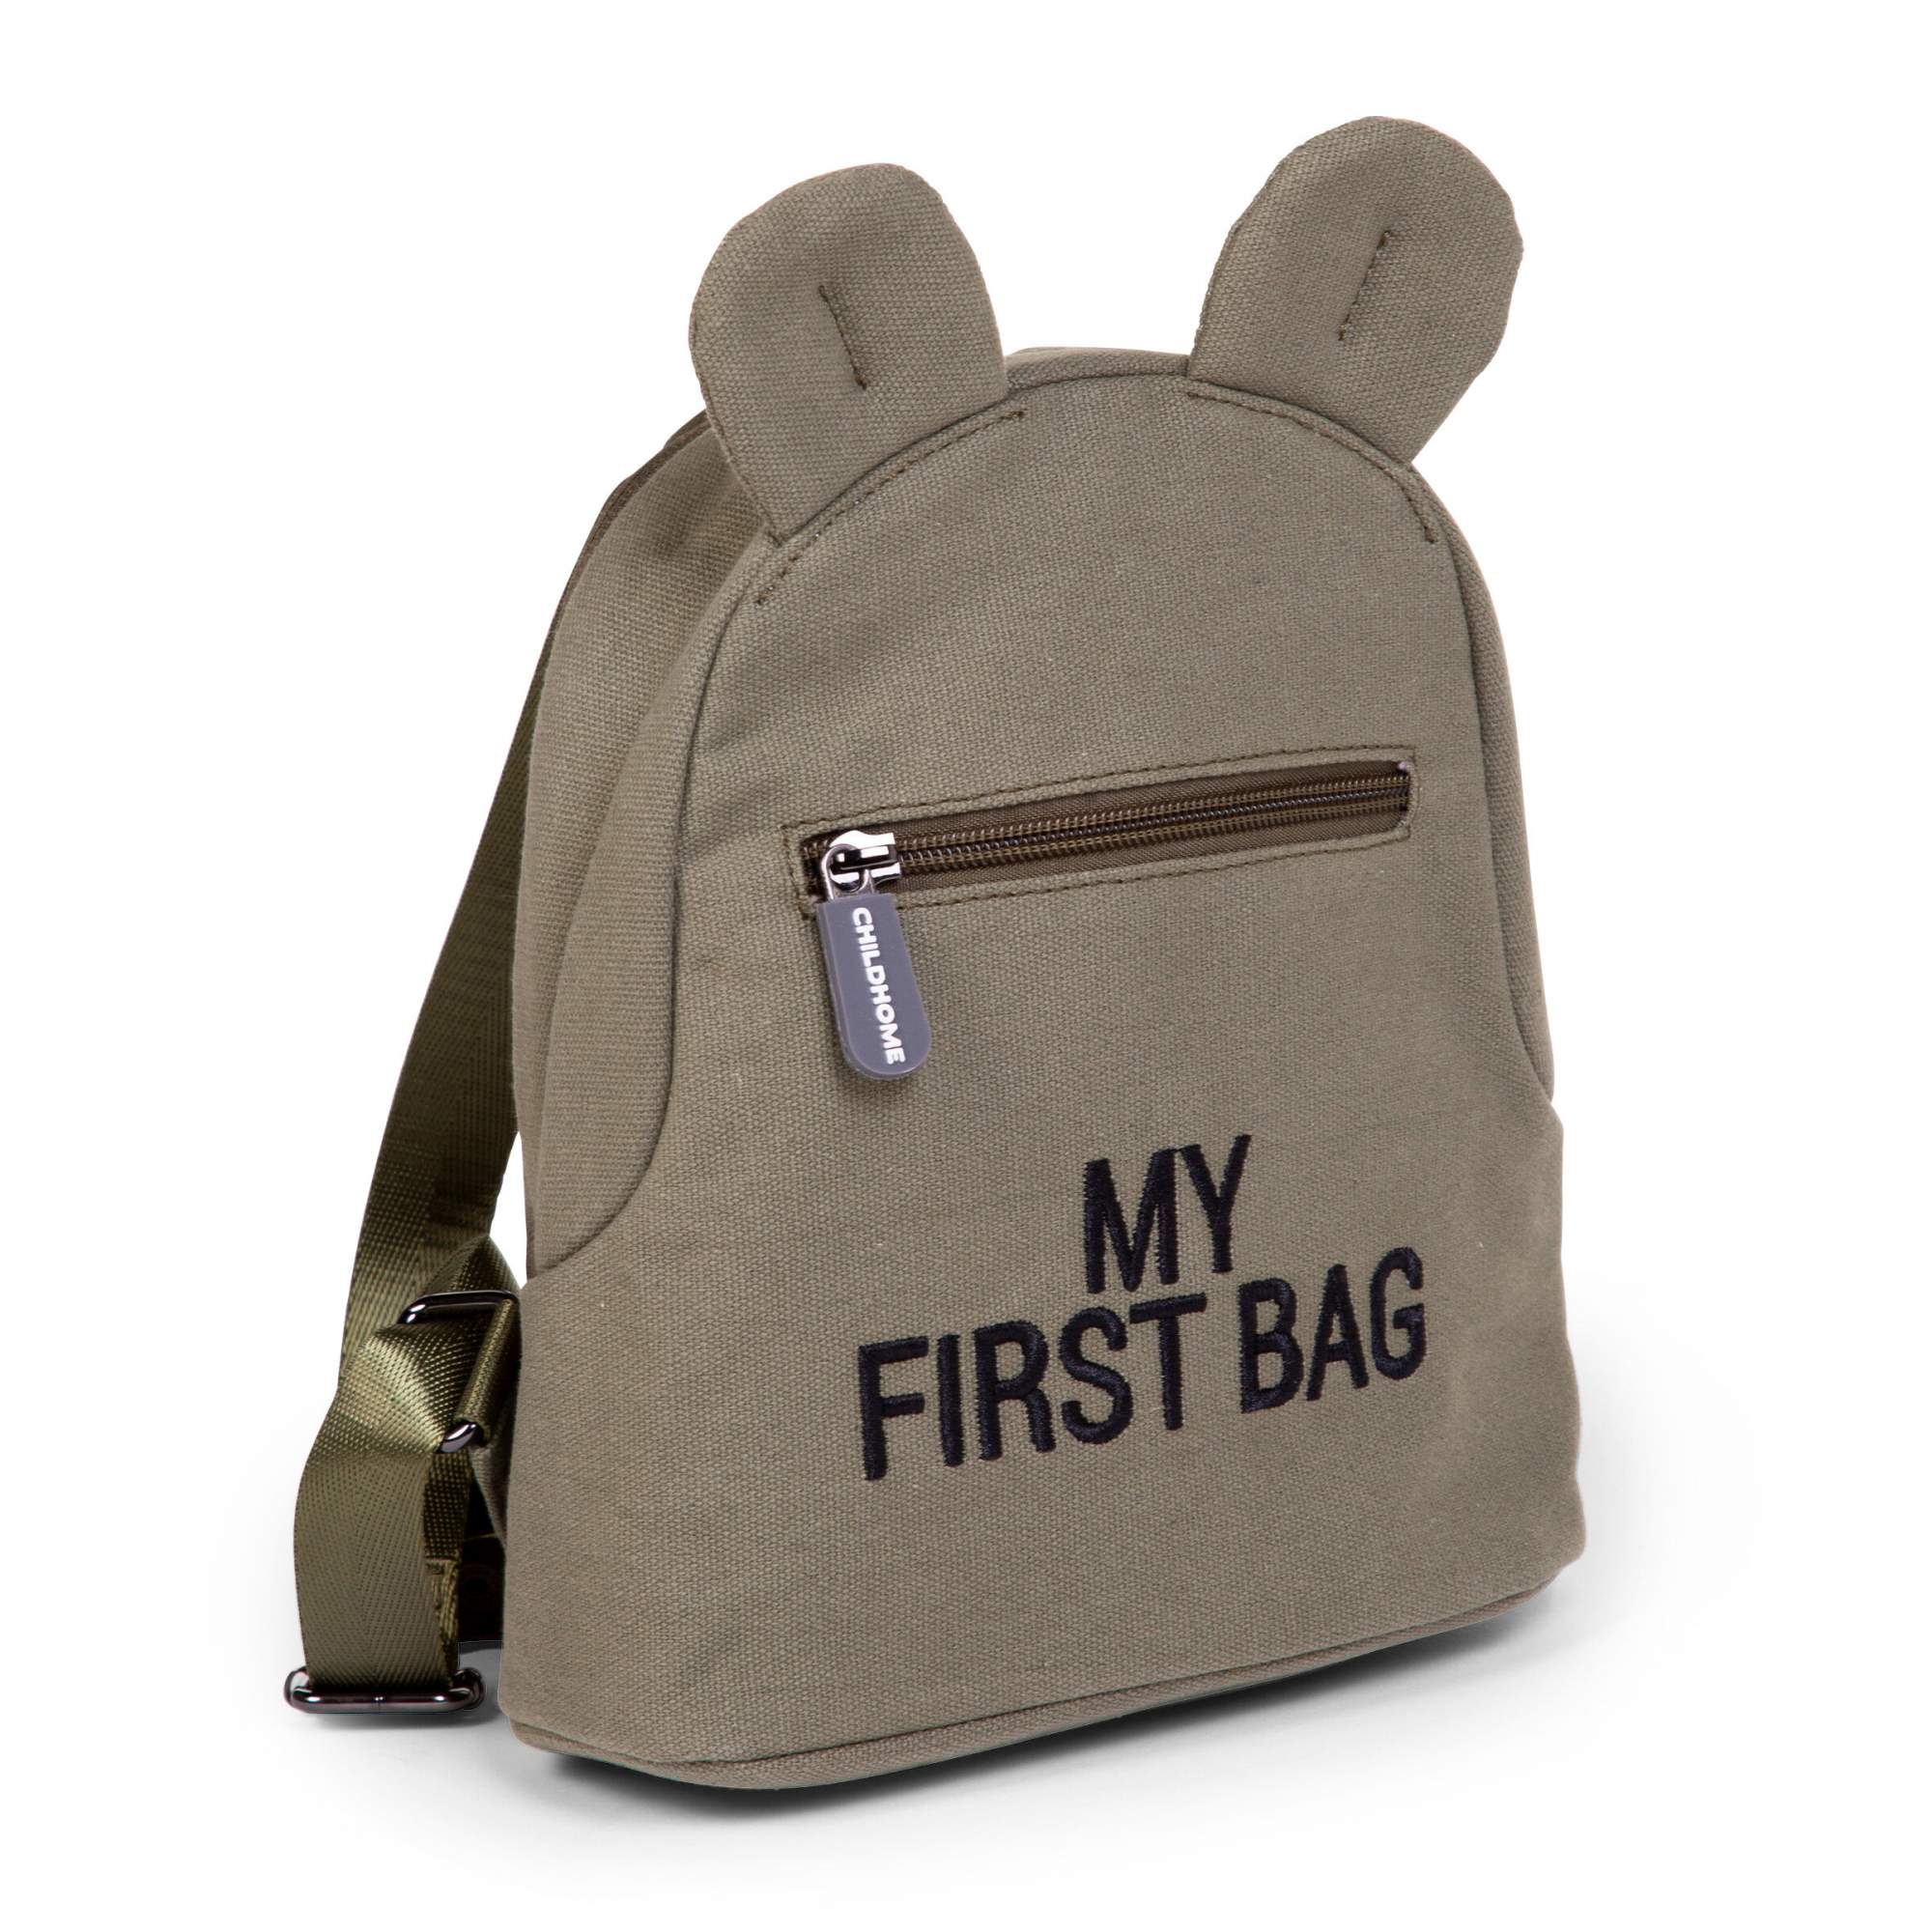 Рюкзак детский для девочек, мальчиков CHILDHOME MY FIRST BAG, хаки